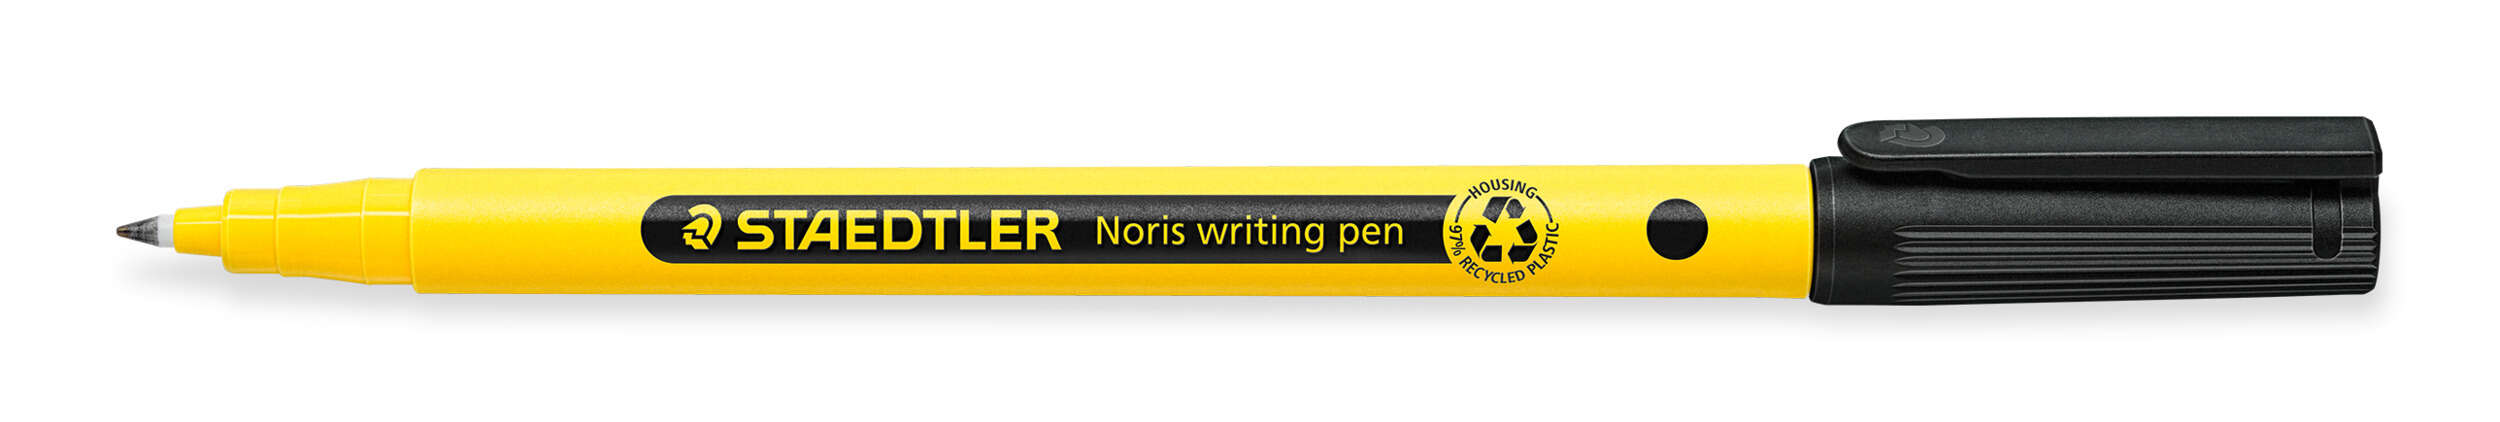 Staedtler 307 Noris Writing Pen Rotulador De Punta Fina - Trazo 0.6Mm Aprox - Tinta Base De Agua - Cuerpo Fabricado En Un 97% De Plastico Reciclado - Color Negro